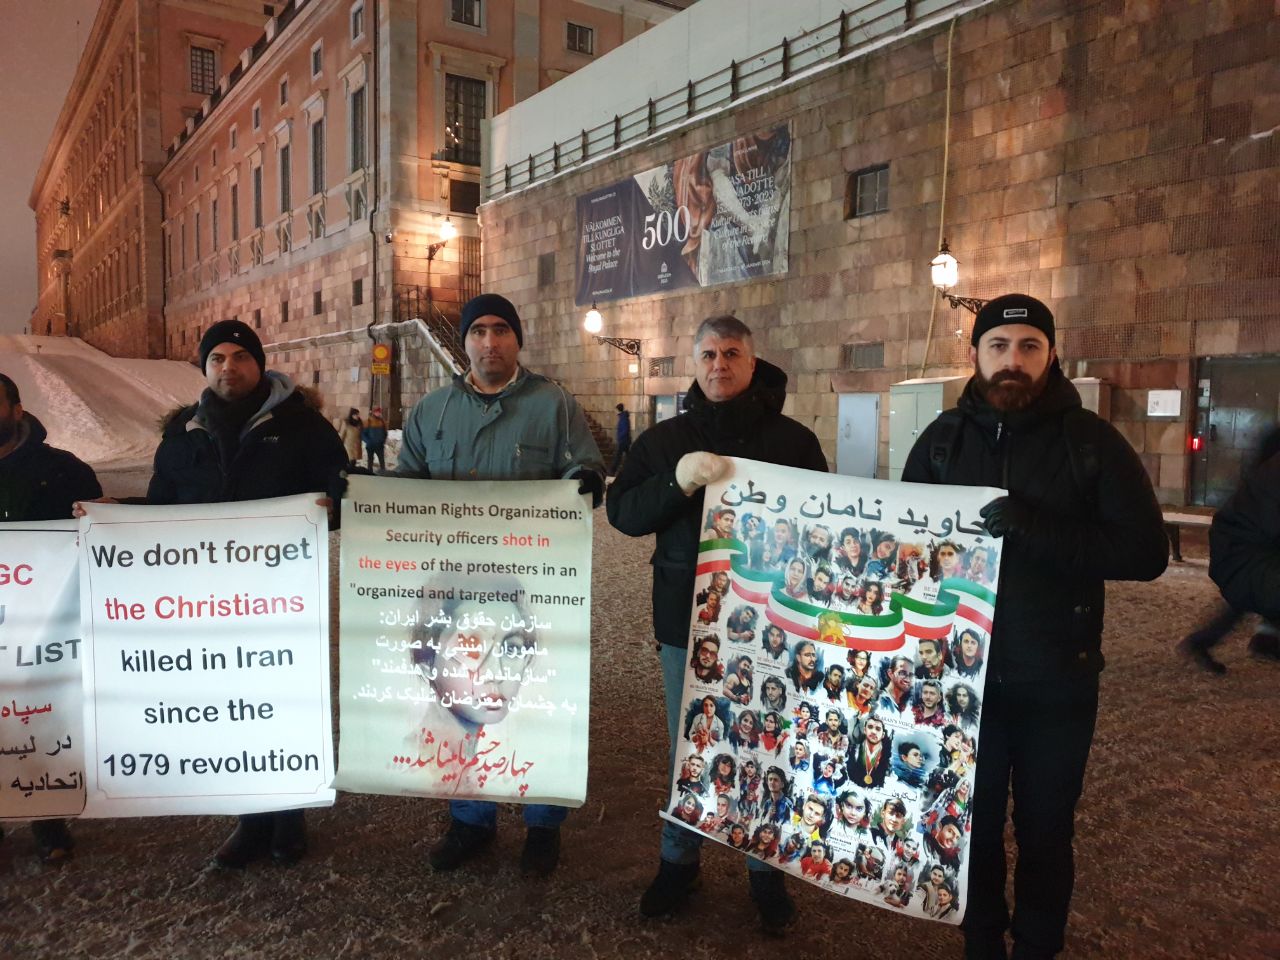 یکشنبه ۱۹ آذر به مناسبت روز جهانی حقوق بشر، ایرانیان ساکن استکهلم در اعتراض به نقض سازمان‌یافته حقوق بشر از سوی جمهوری اسلامی، مقابل پارلمان سوئد تجمعی برگزار کردند